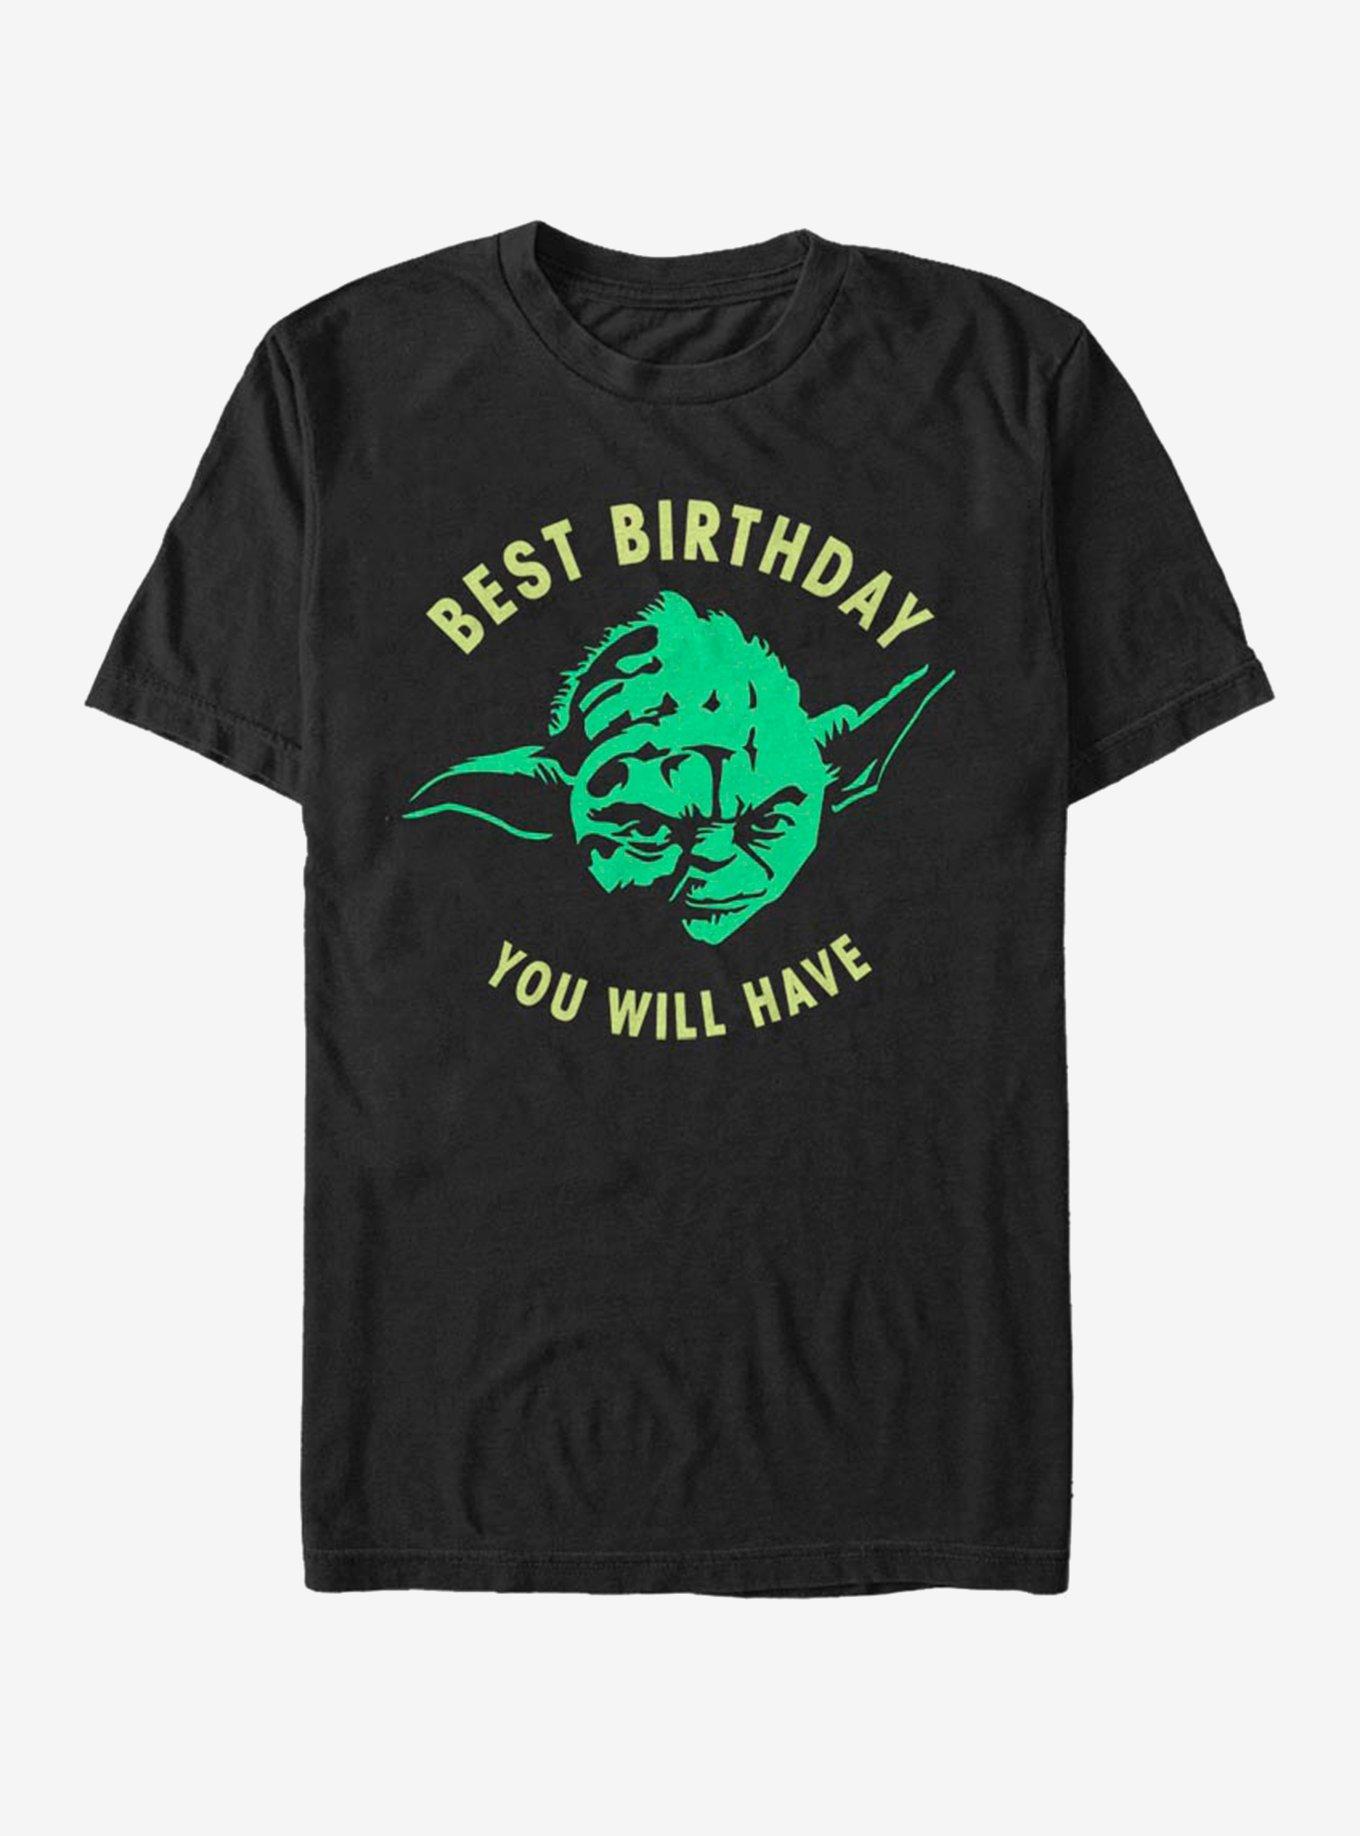 Star Wars Yoda Day T-Shirt